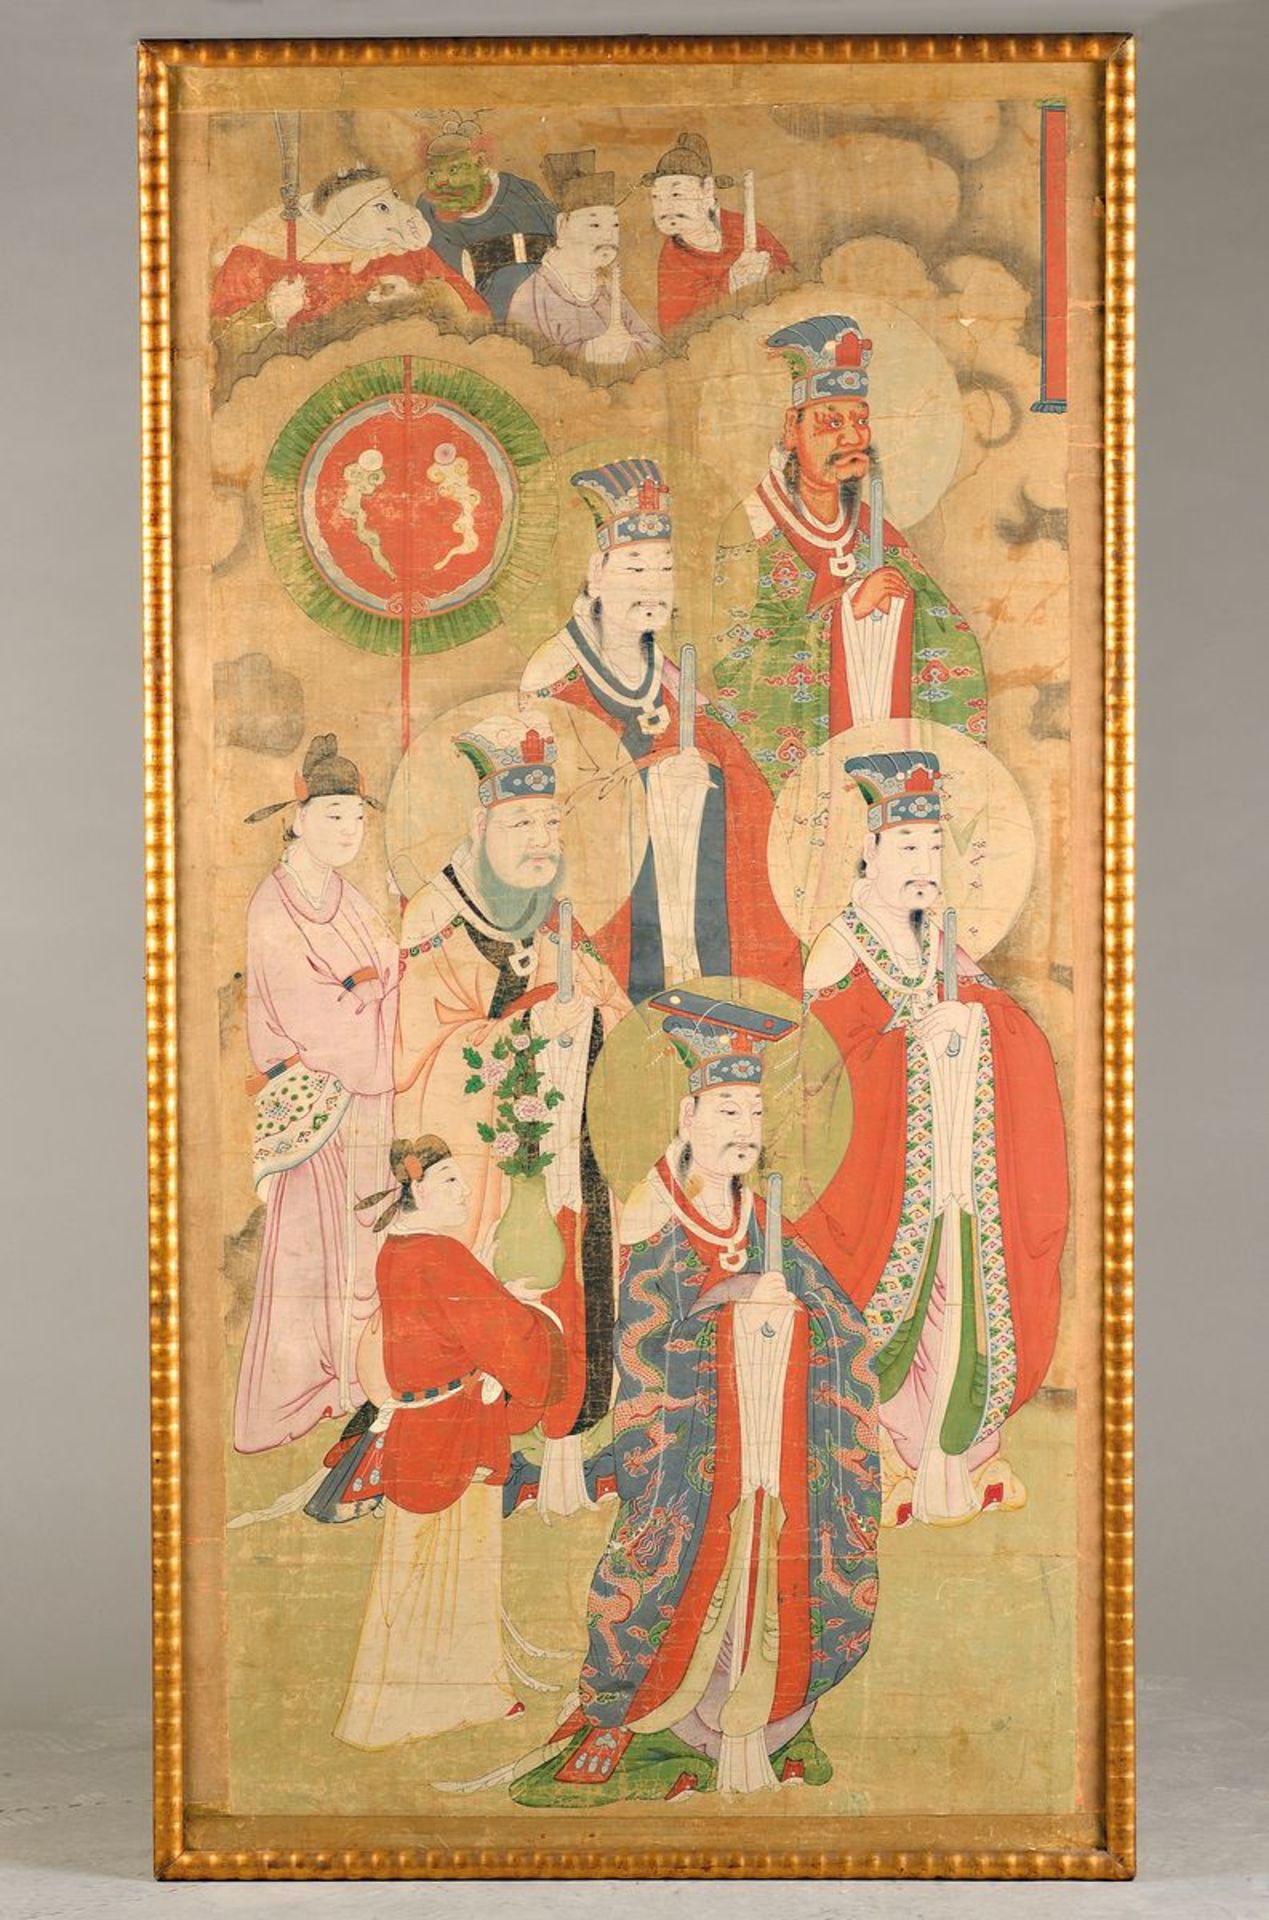 Wandbild, China, 18.Jh., Mischtechnik auf Papier, von gelber Seidenborte eingefasst, Darstellung von